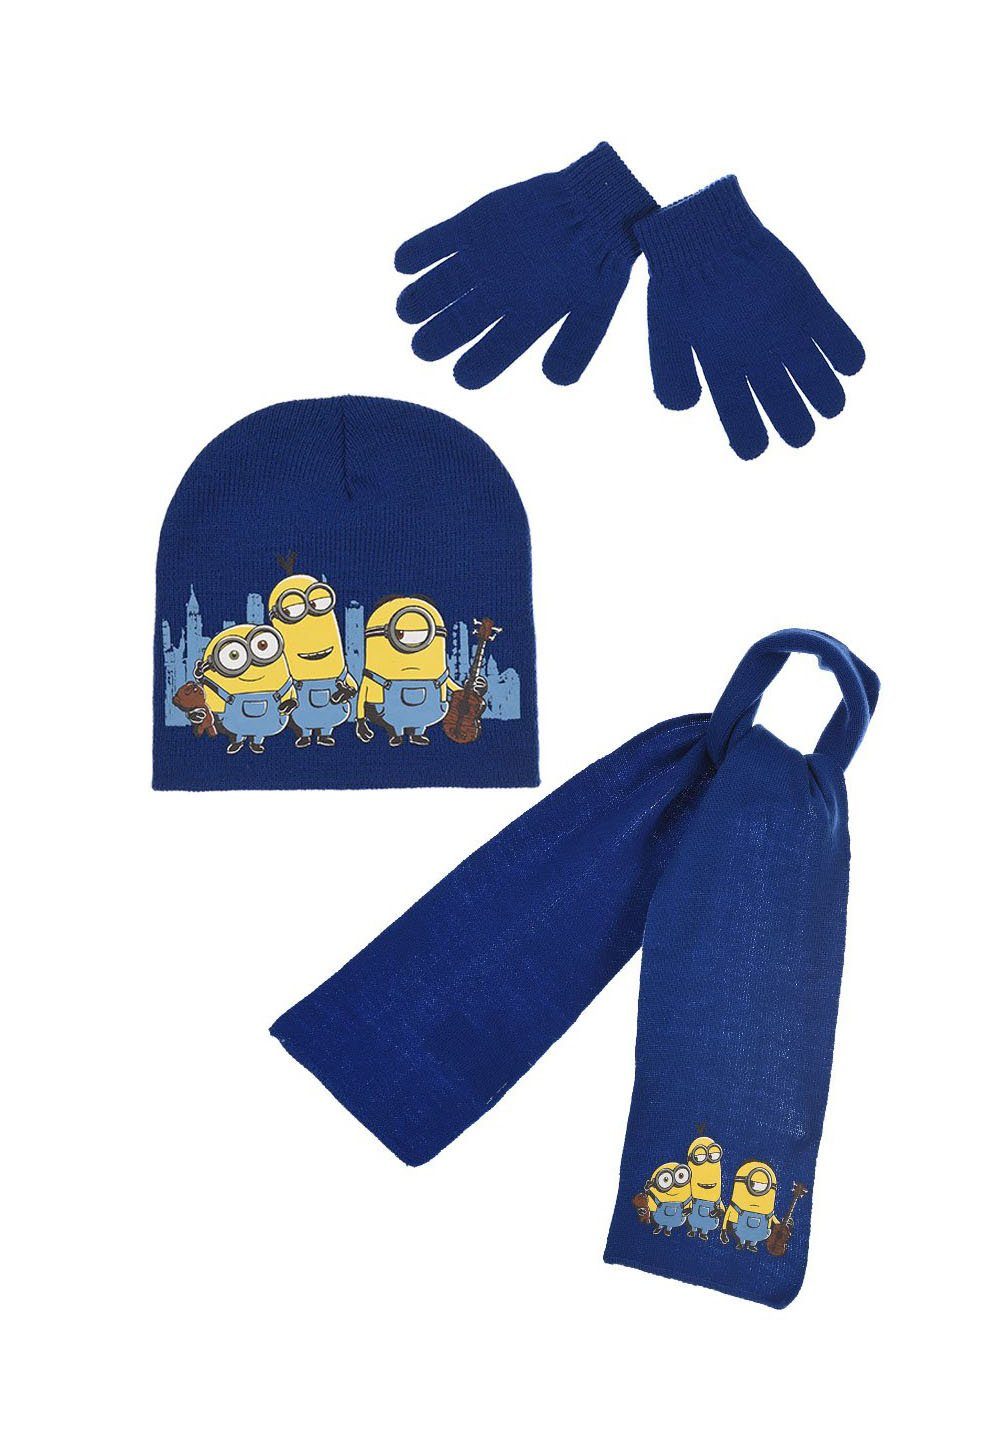 Minions Beanie »Kinder Jungen Winter-Set Winter-Mütze Schal Handschuhe« (SET)  online kaufen | OTTO